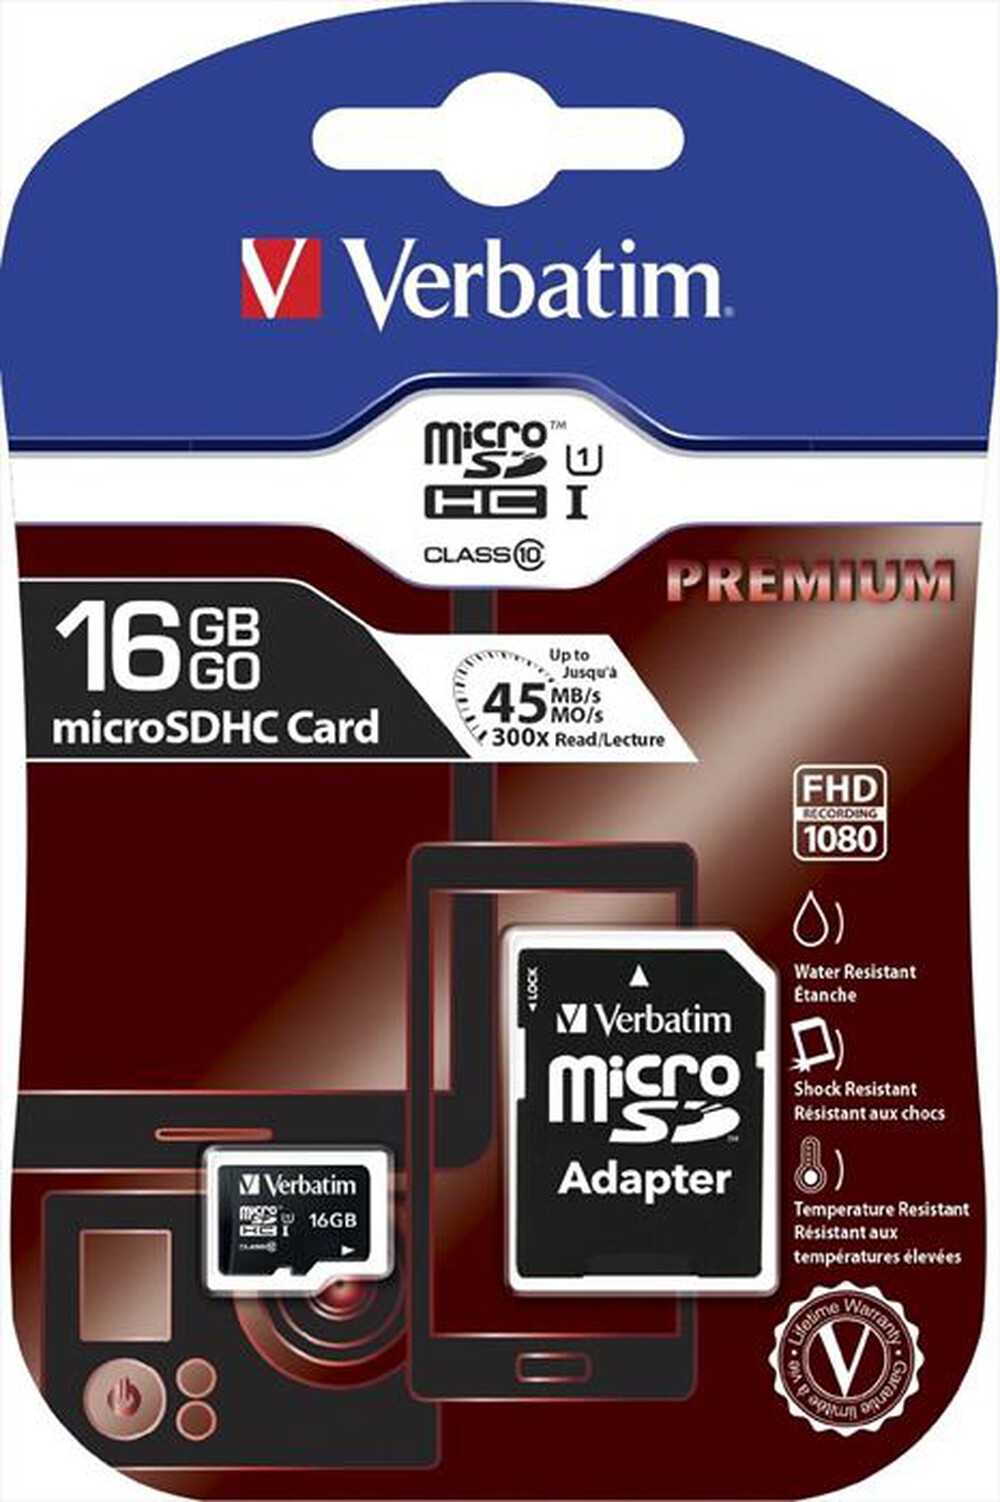 "VERBATIM - MicroSD 16GB"